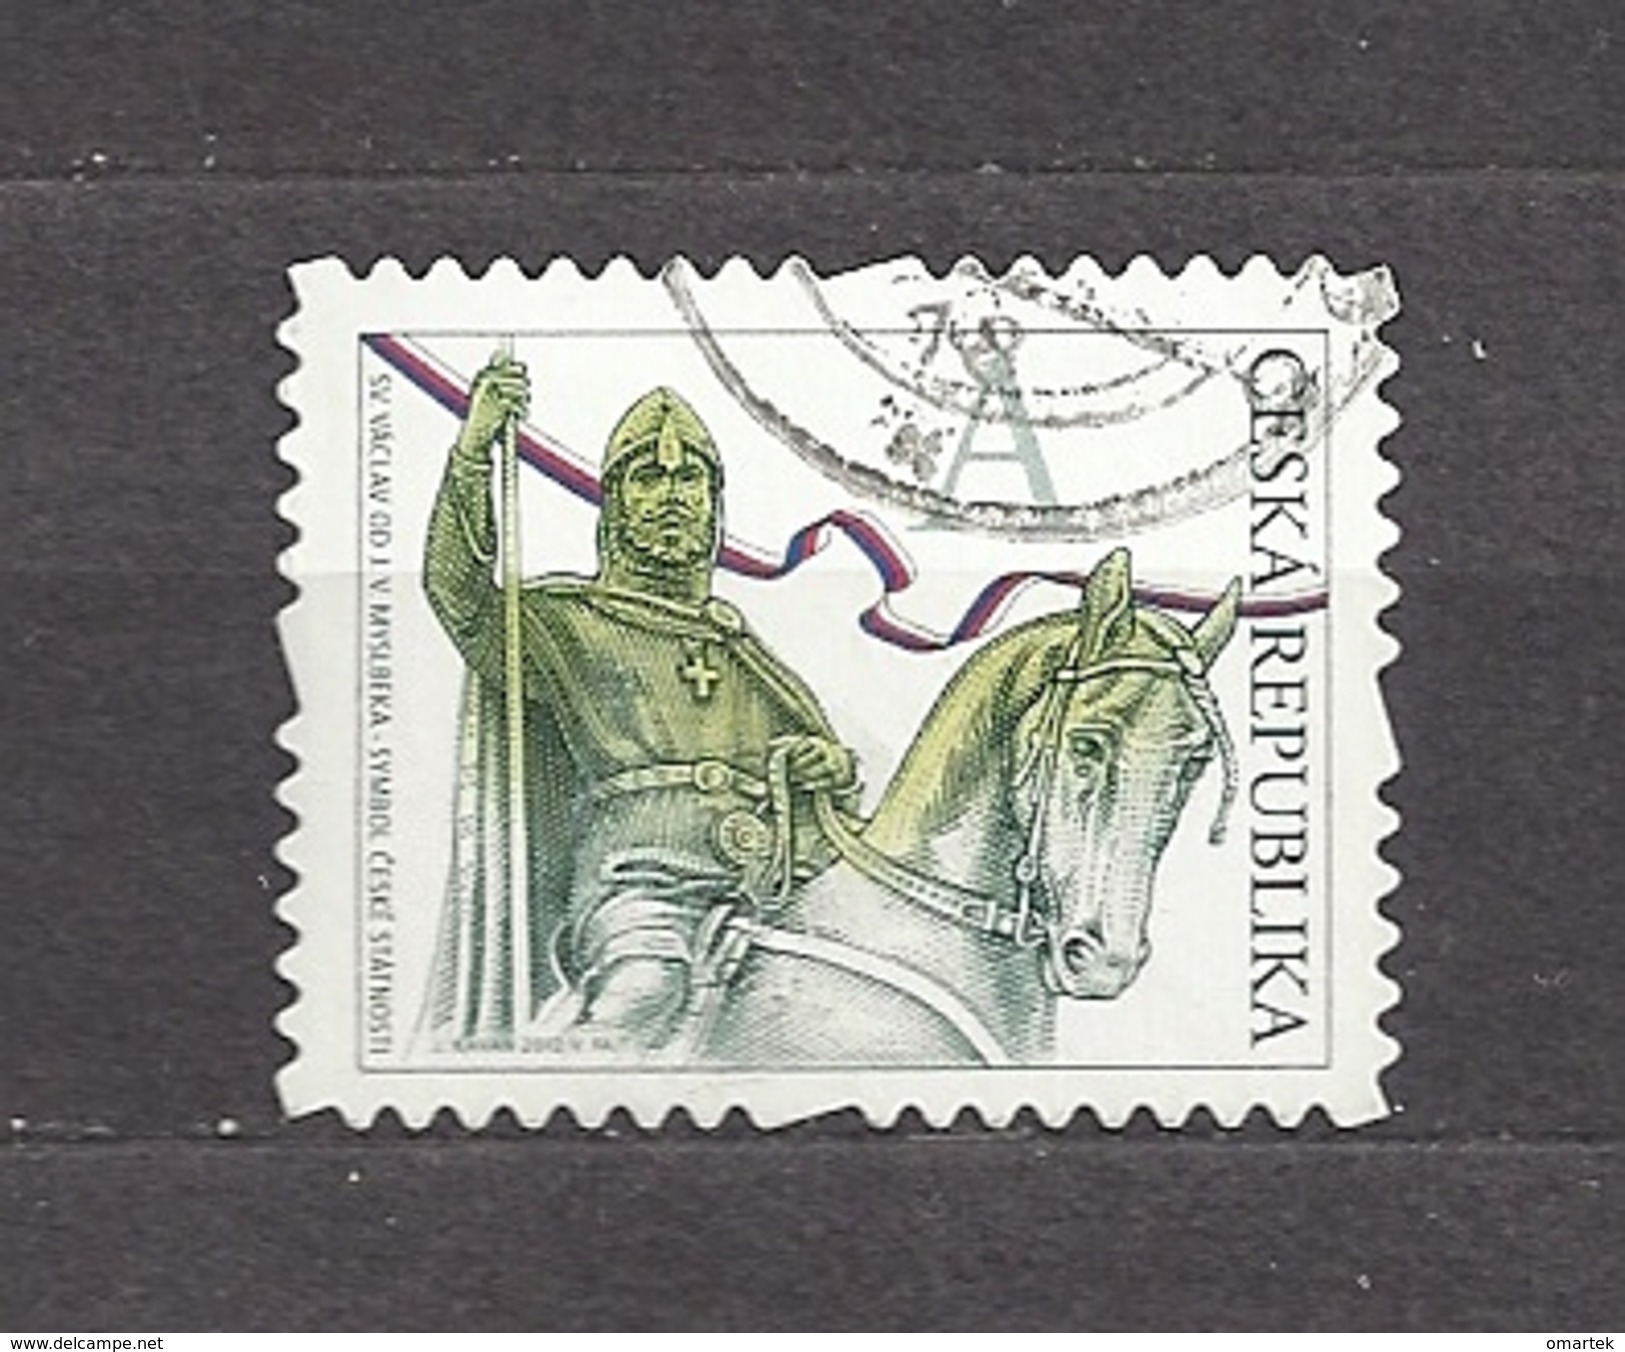 Czech Republic Tschechische Republik 2012 ⊙ Mi 723 Sc 3536 St. Wenceslas.  Herstellungsfehler  Production Flaw - Used Stamps